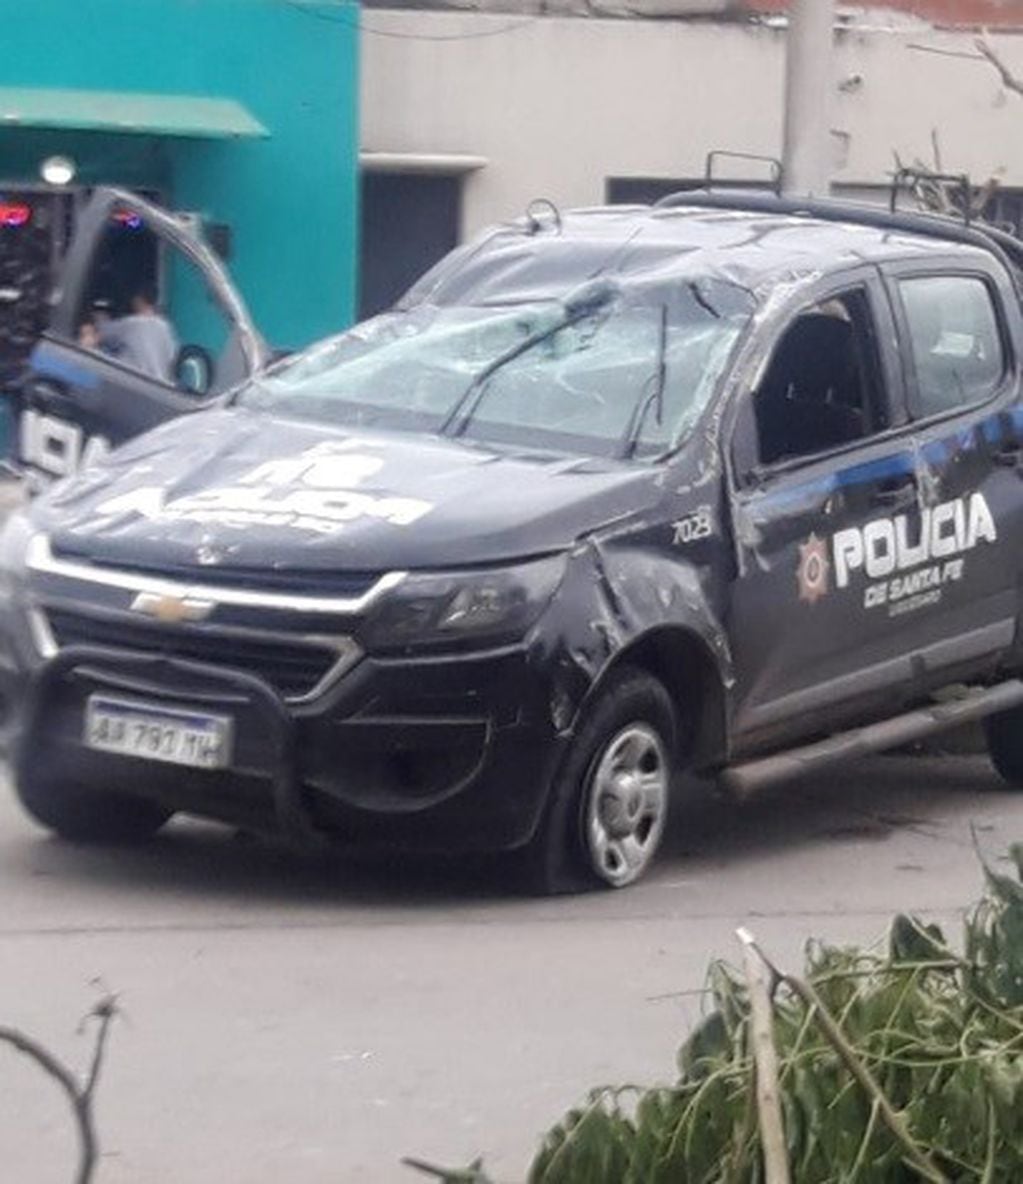 Persecución policial termina con otro patrullero destrozado (@emergenciasAR)